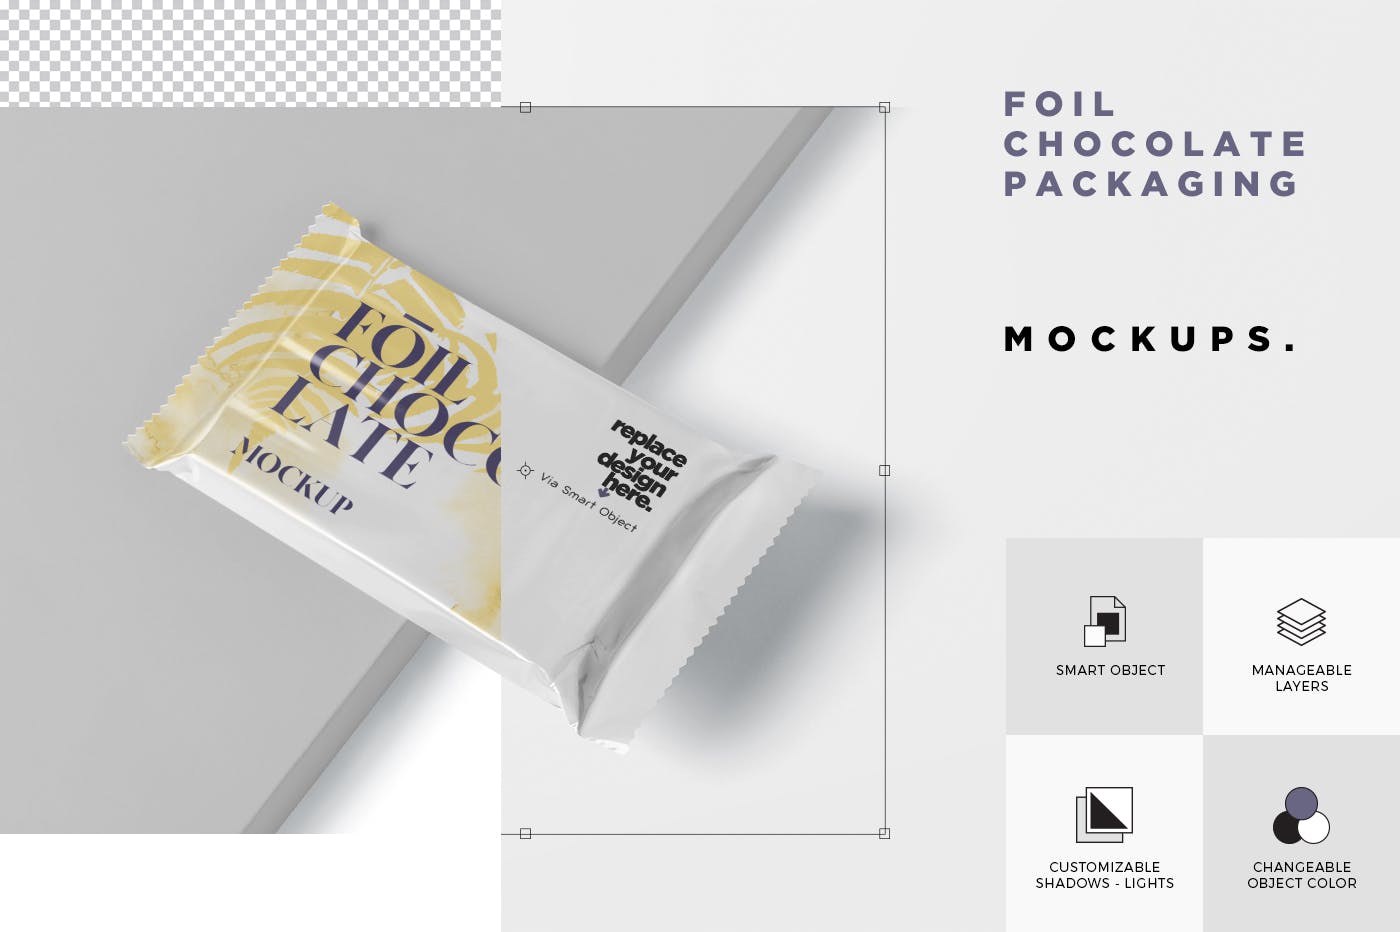 巧克力超薄铝箔纸包装设计效果图蚂蚁素材精选 Foil Chocolate Packaging Mockup – Slim Size插图(5)